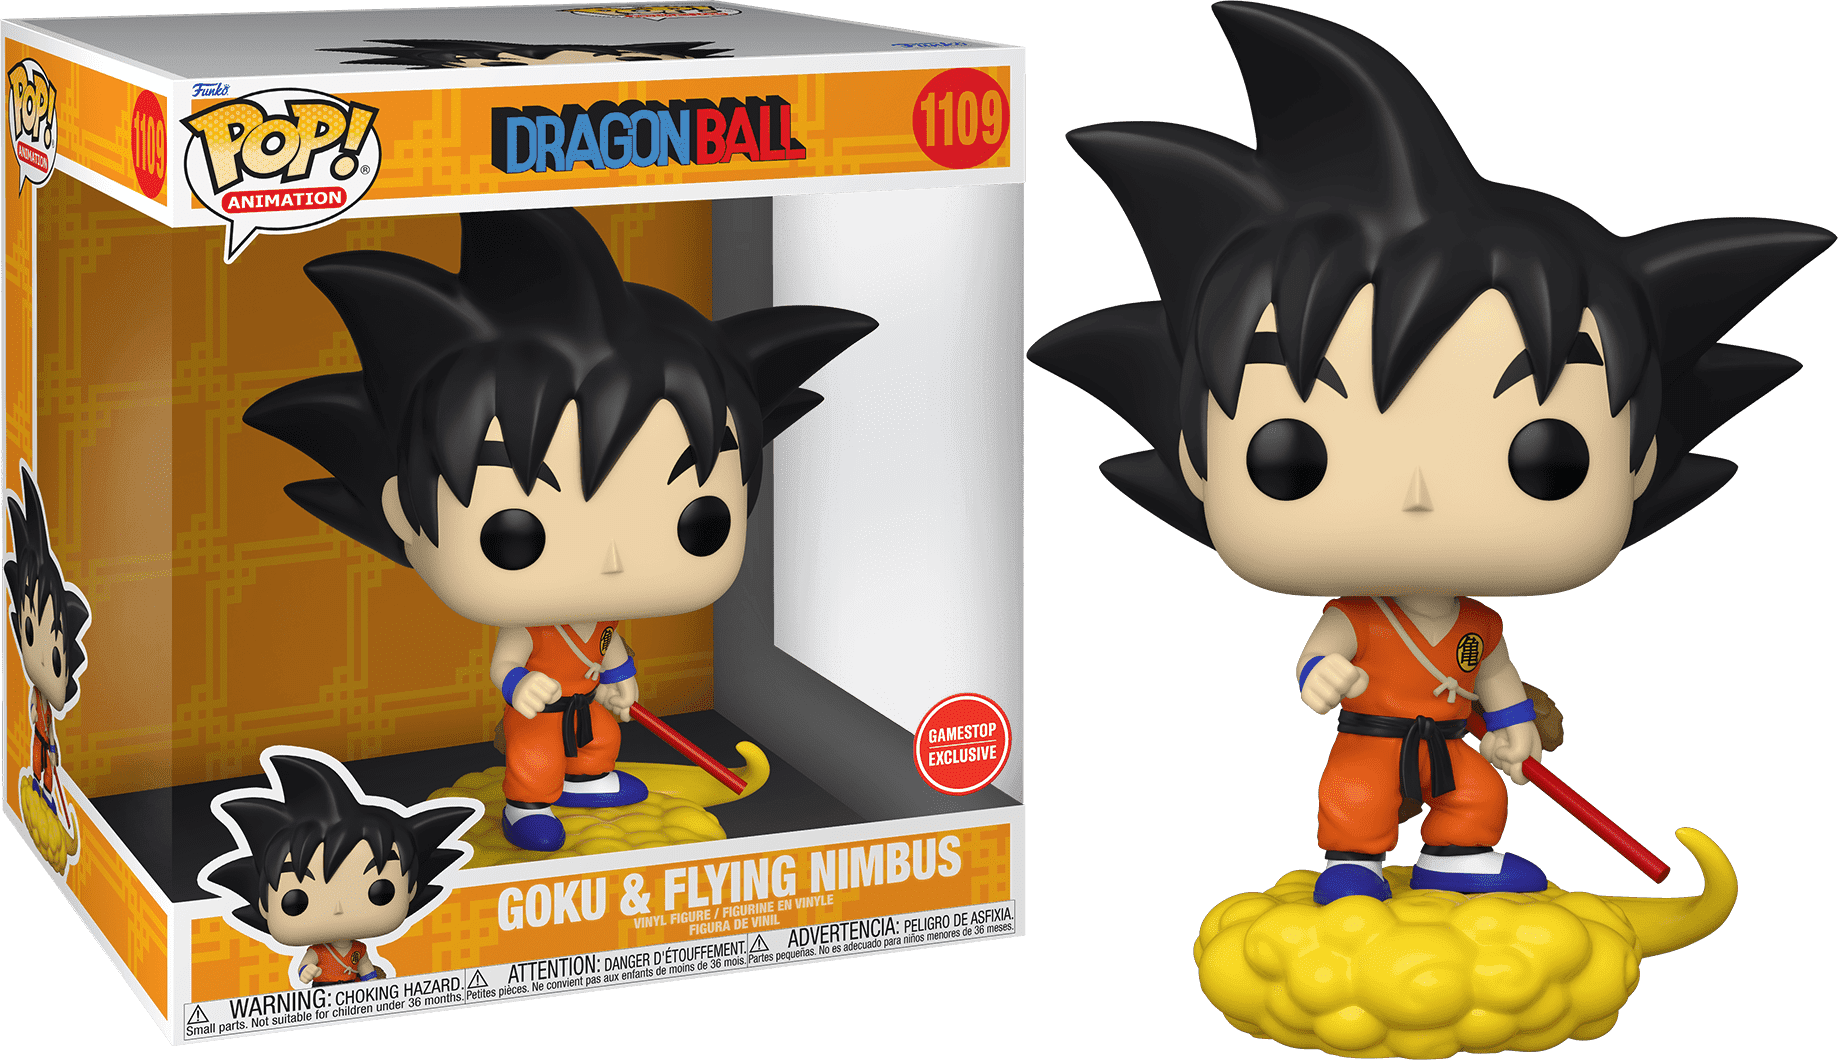 POP! Animation: 1109 Dragon Ball, Goku & Flying Nimbus (Deluxe) Exclusive